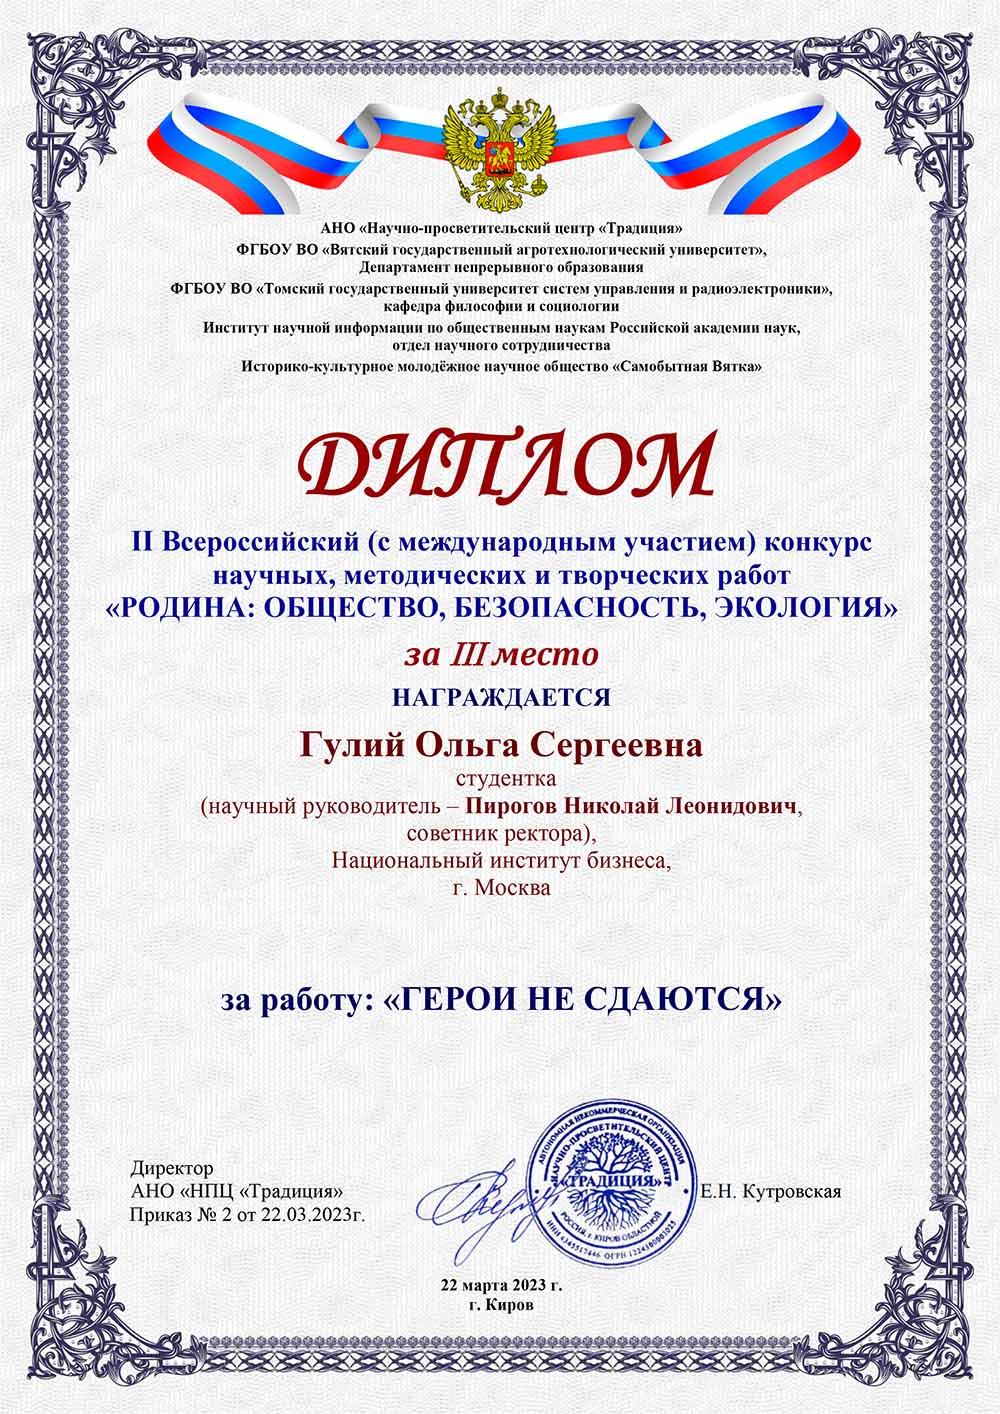 Поздравляем студентку, занявшую 3 место во II Всероссийском конкурсе